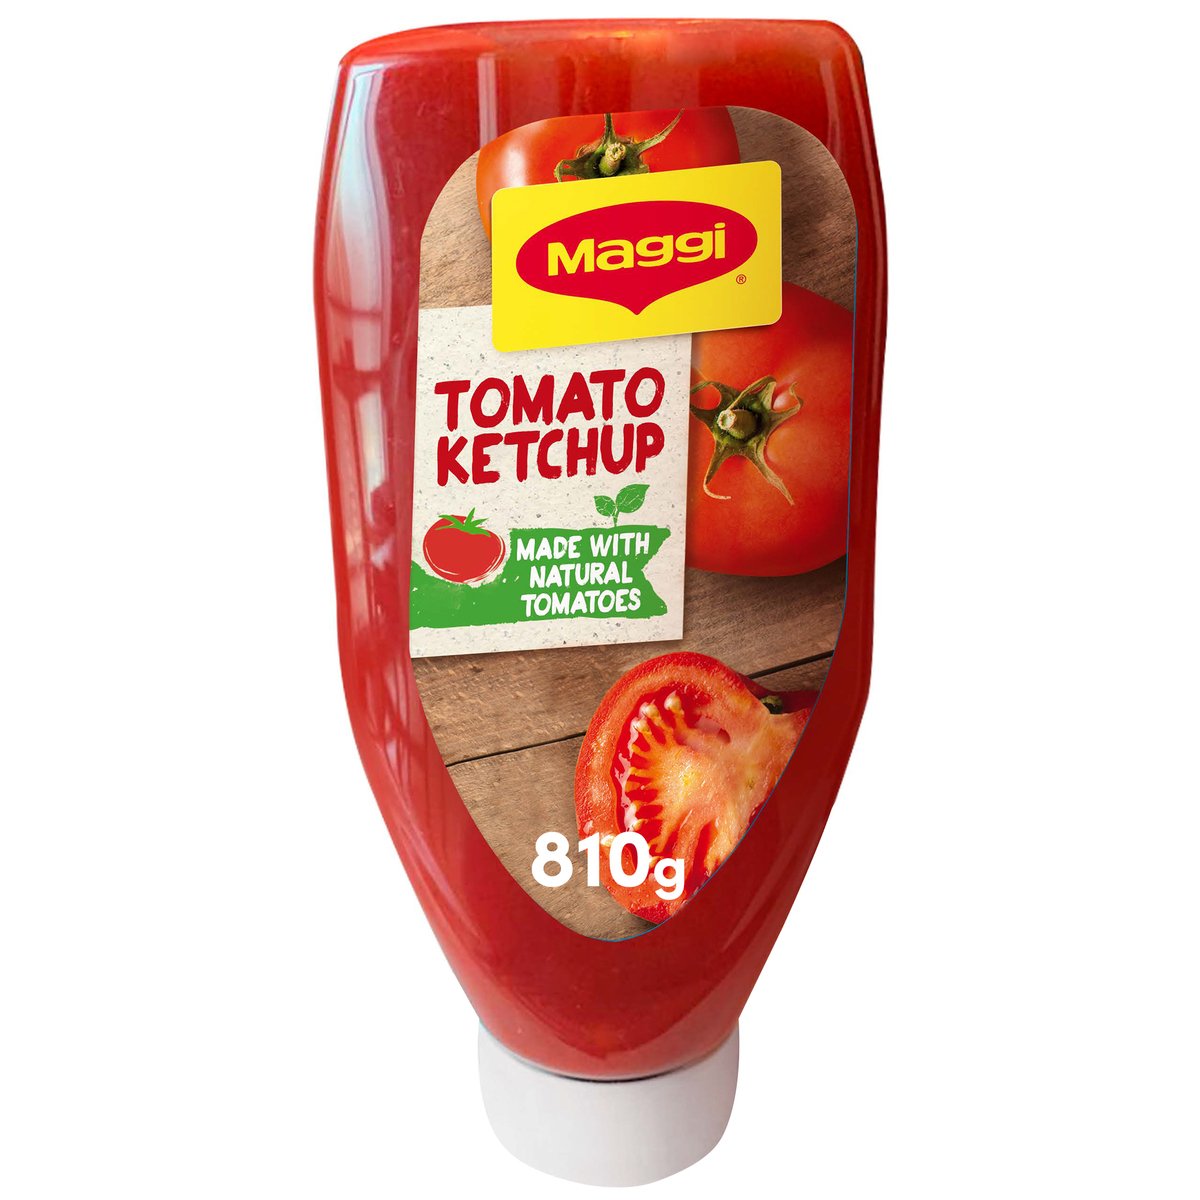 ماجي كاتشب الطماطم 810 جم